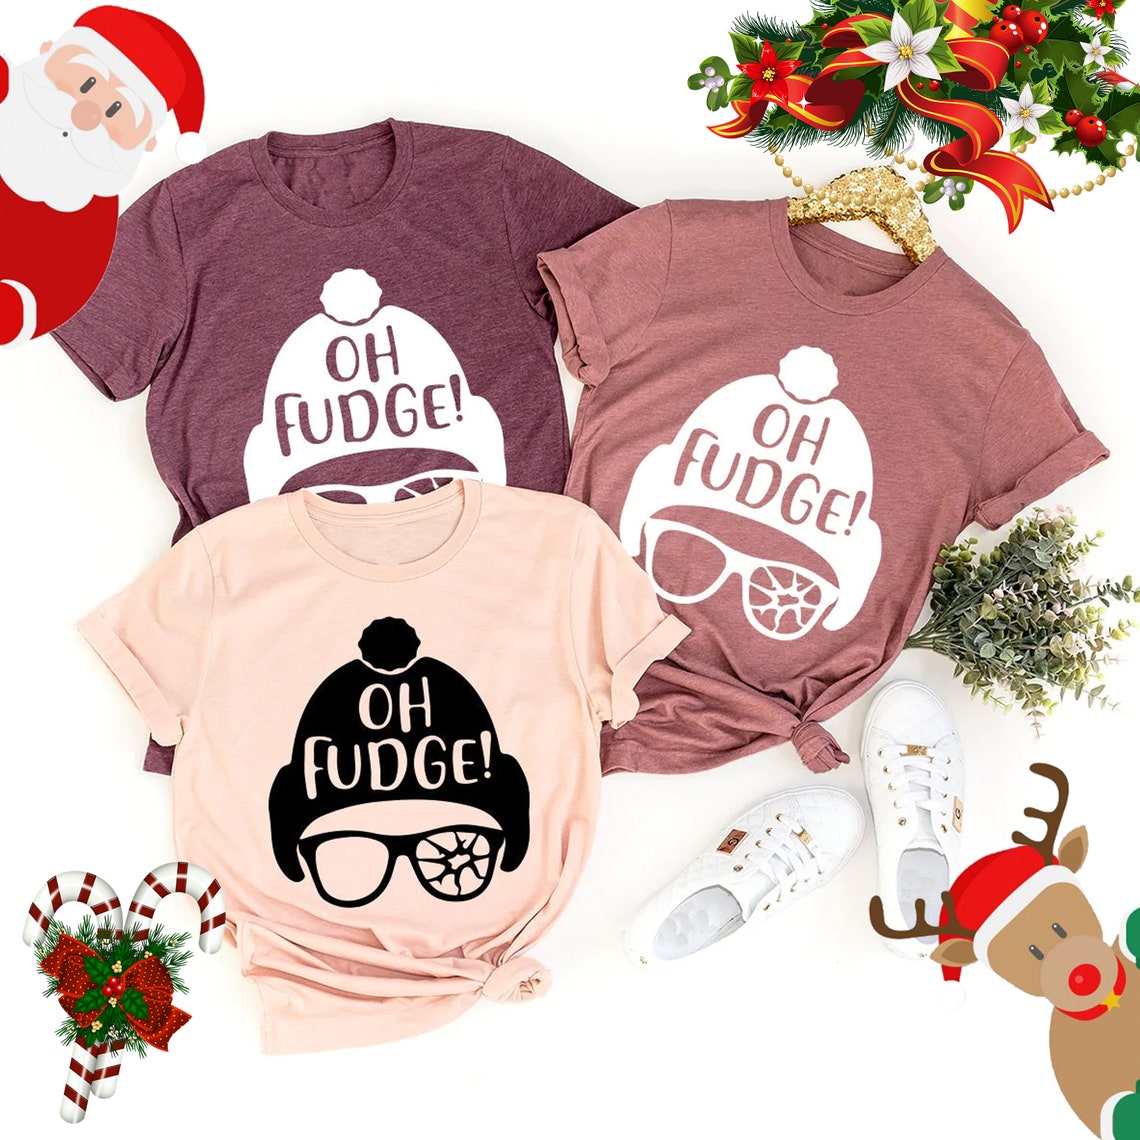 Funny Christmas Shirt, Oh Fudge Shirt, Christmas T Shirt, Christmas Vacation Shir